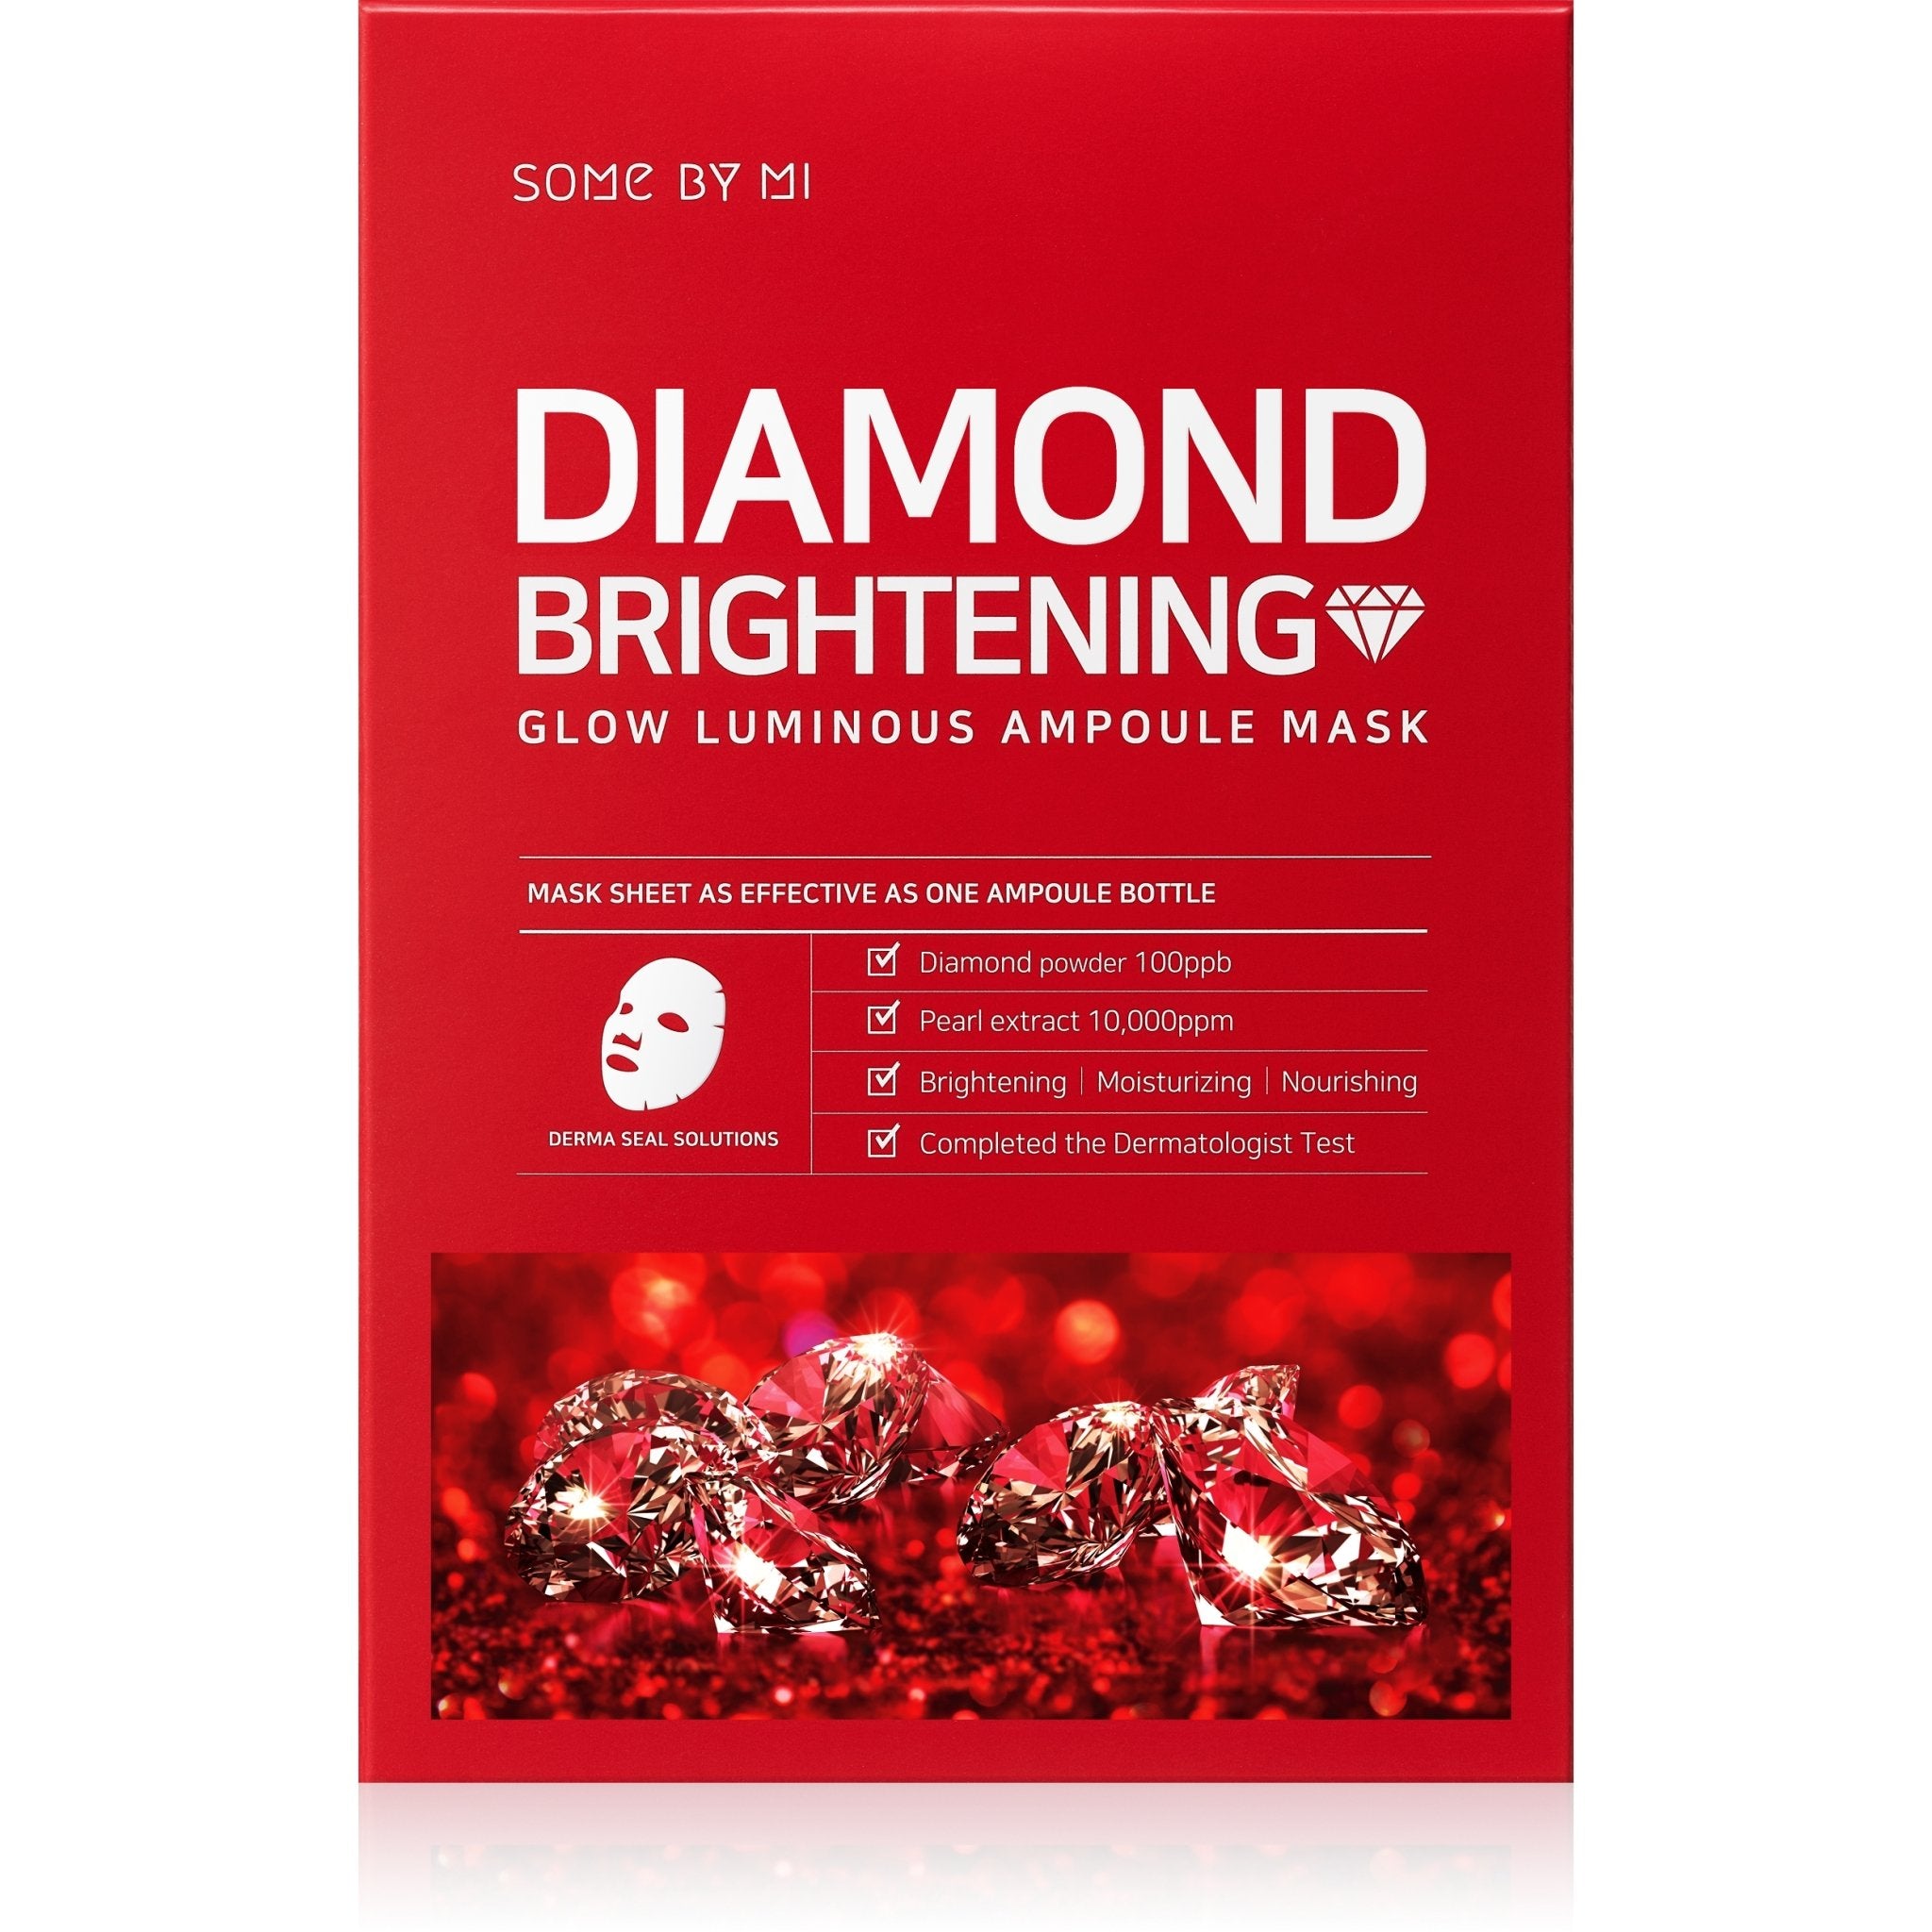 DIAMOND BRIGHTENNING GLOW LUMINOUS AMPOULE MASK NR-10121 - IZZAT DAOUK SA